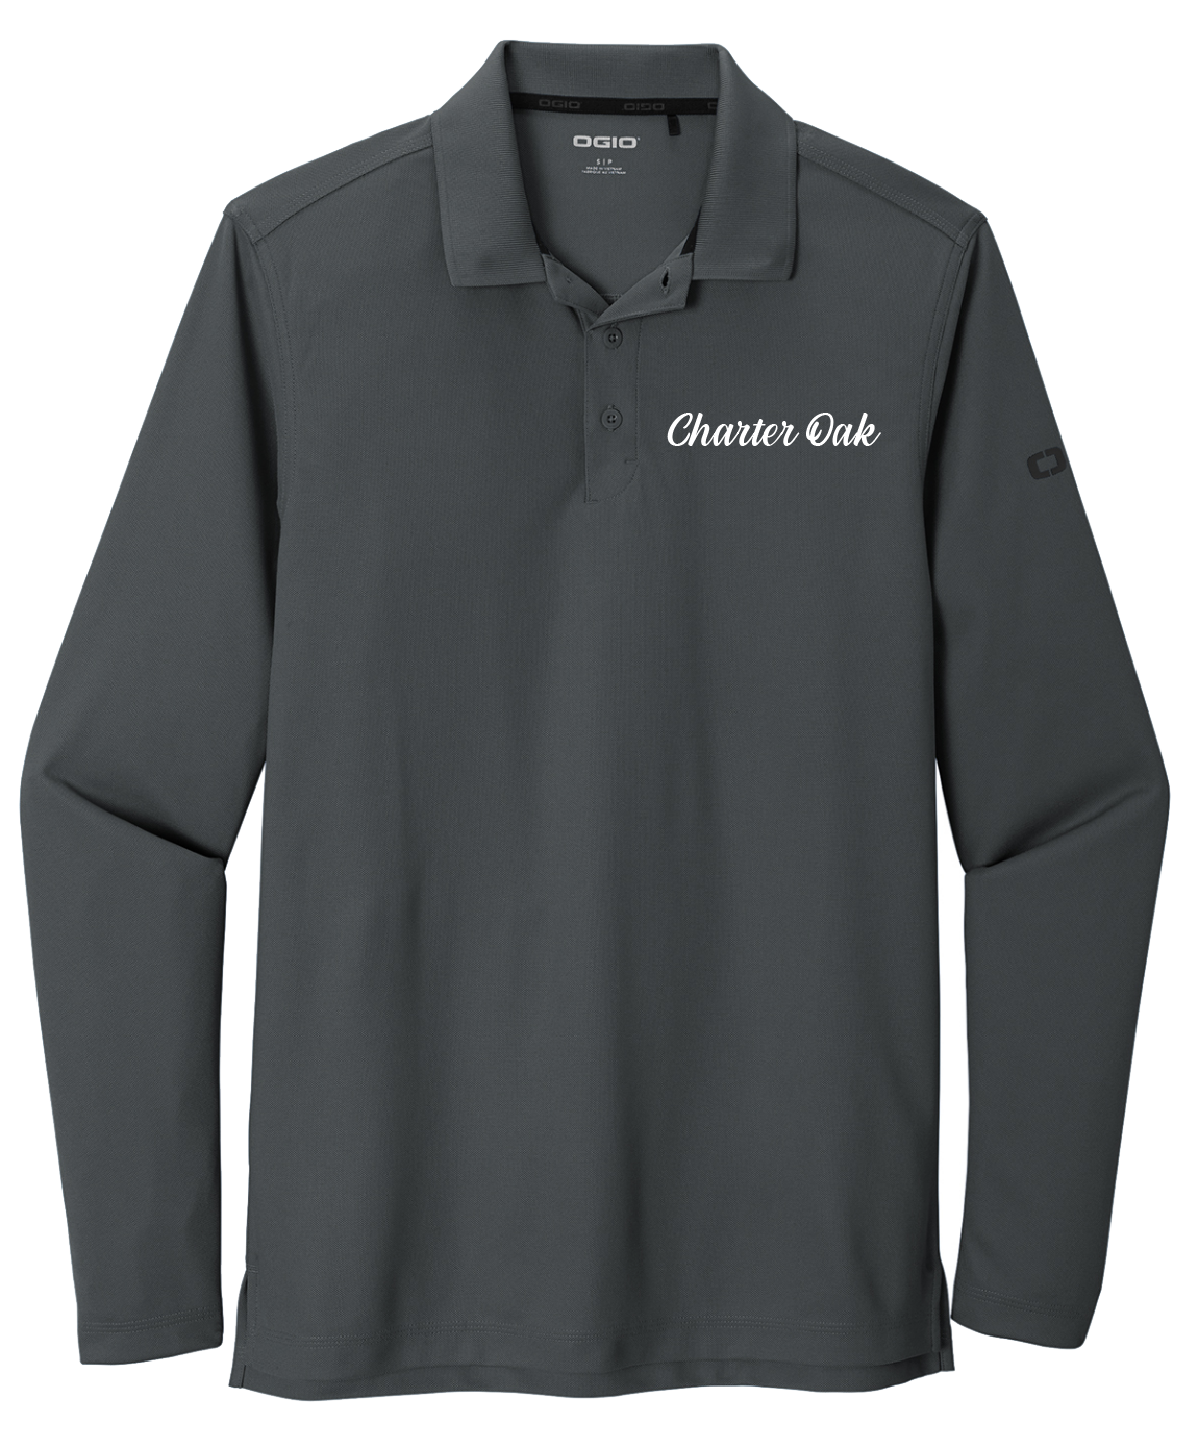 Charter Oak - Mens - OGIO ® Caliber2.0 Long Sleeve